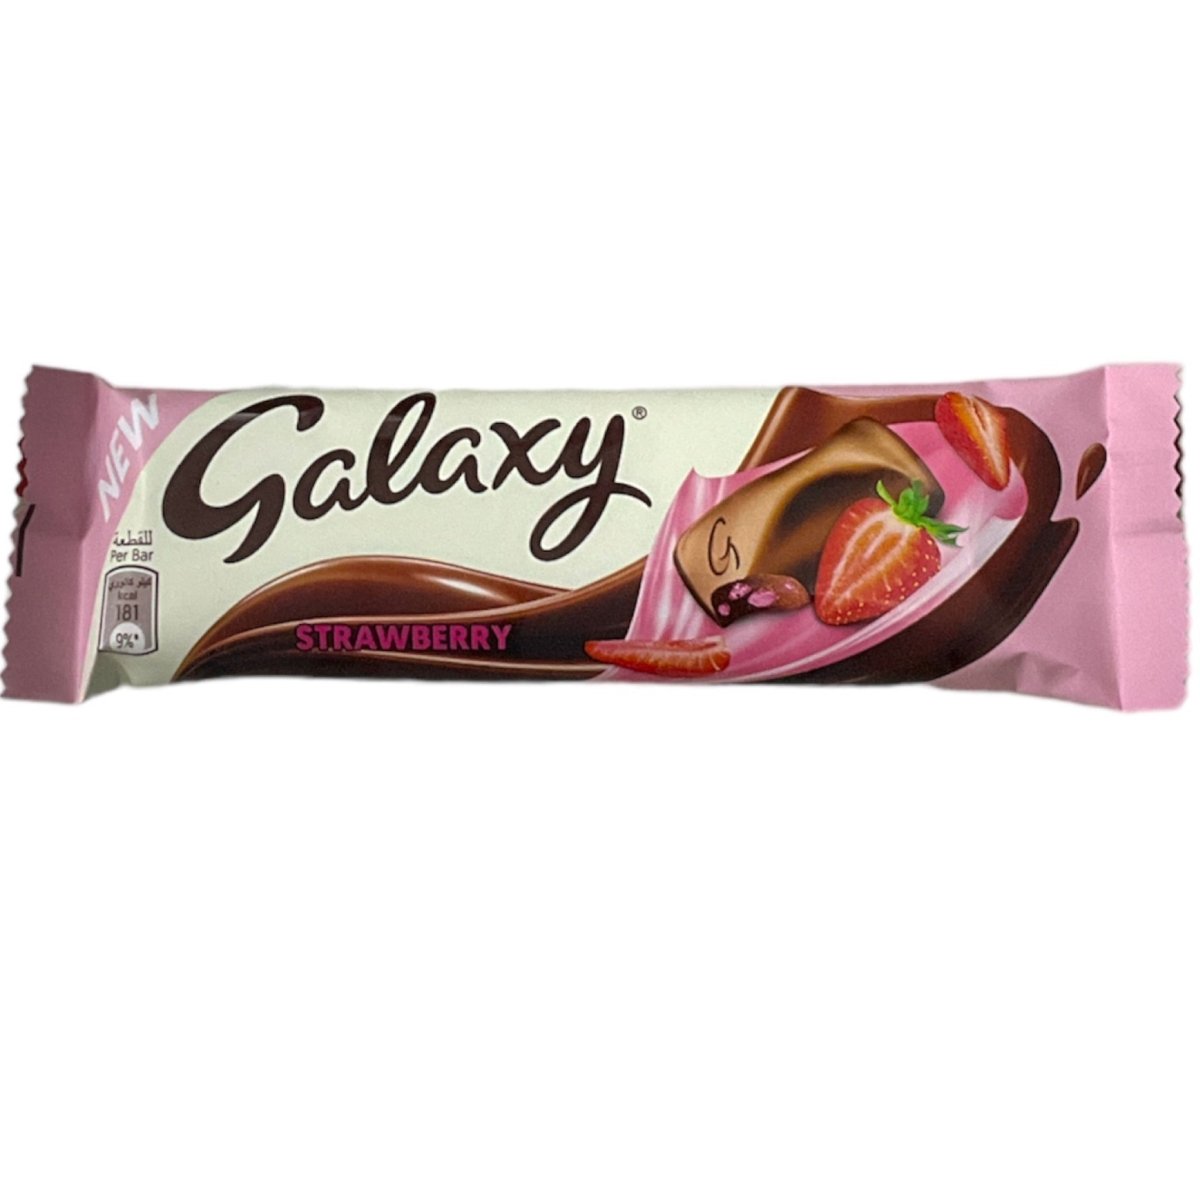 Galaxy Strawberry (Dubai Import) 36g - Candy Mail UK